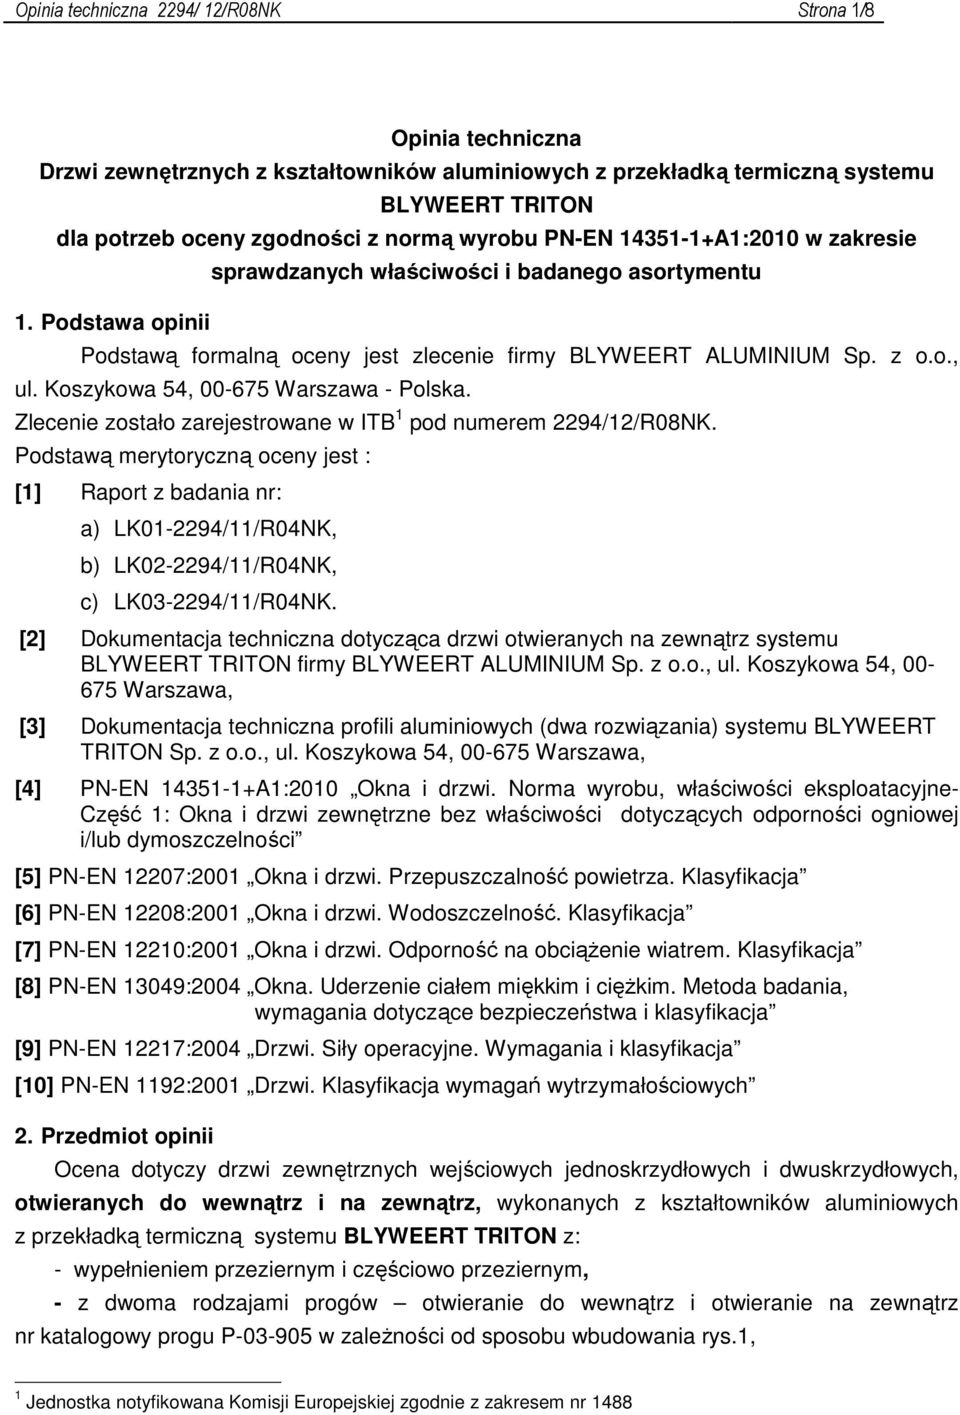 Koszykowa 54, 00-675 Warszawa - Polska. Zlecenie zostało zarejestrowane w ITB 1 pod numerem 2294/12/R08NK.